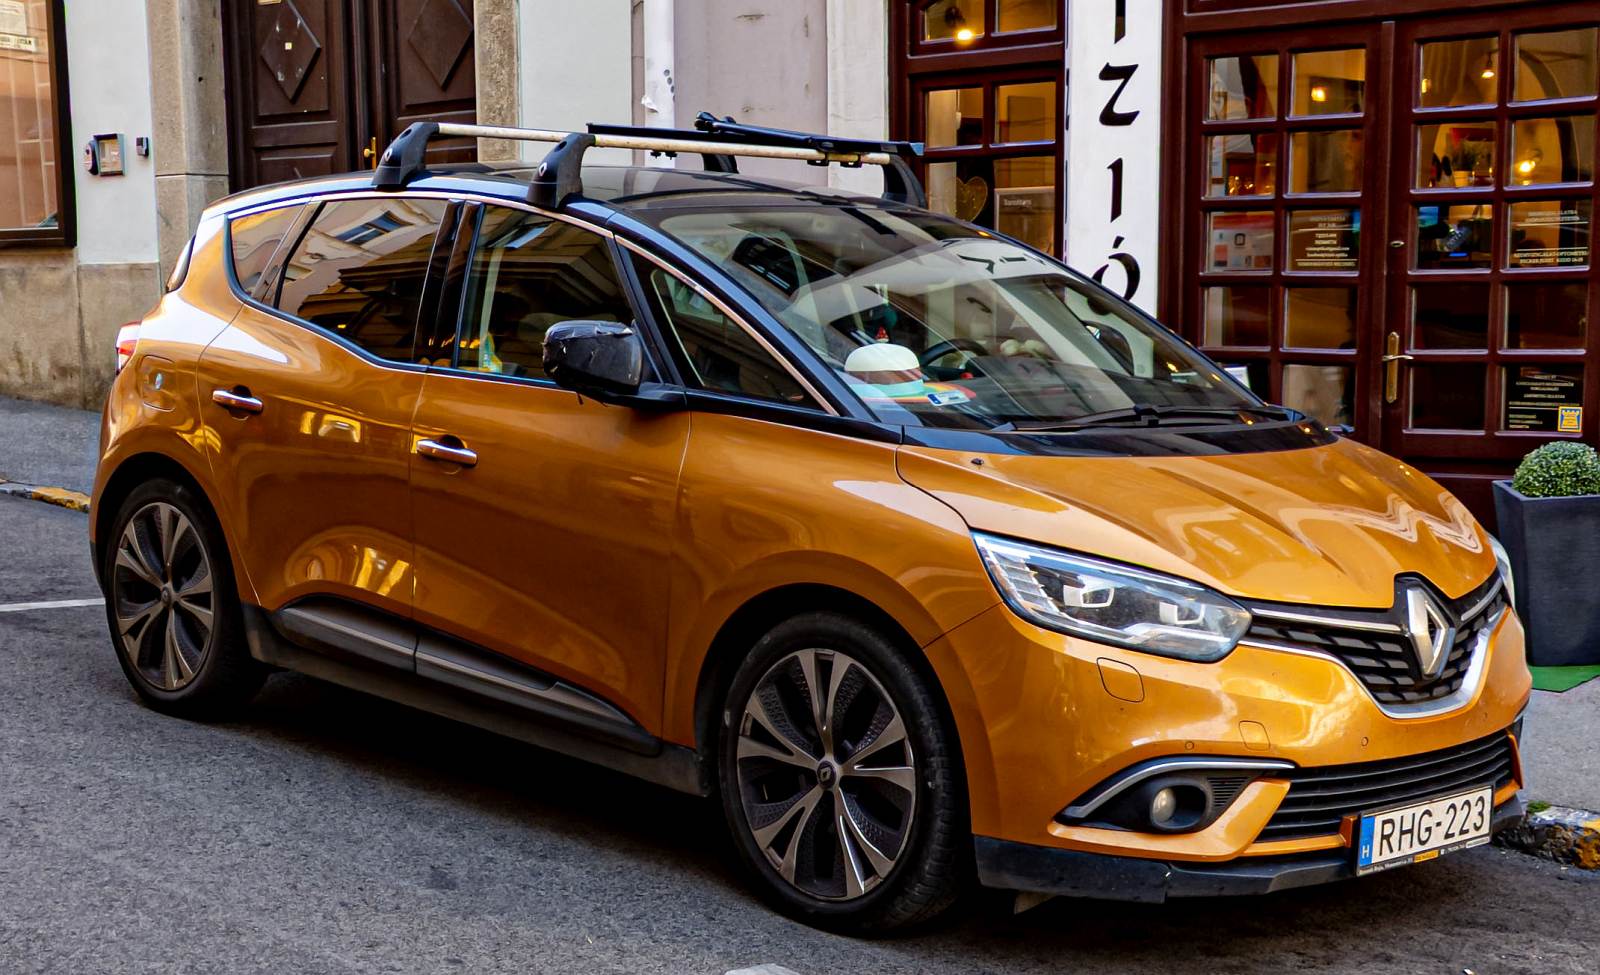 Hier ist ein Renault Scenic (vierte Generation) in der Farbe  Honey Yellow  zu sehen. Foto: Juli, 2023.